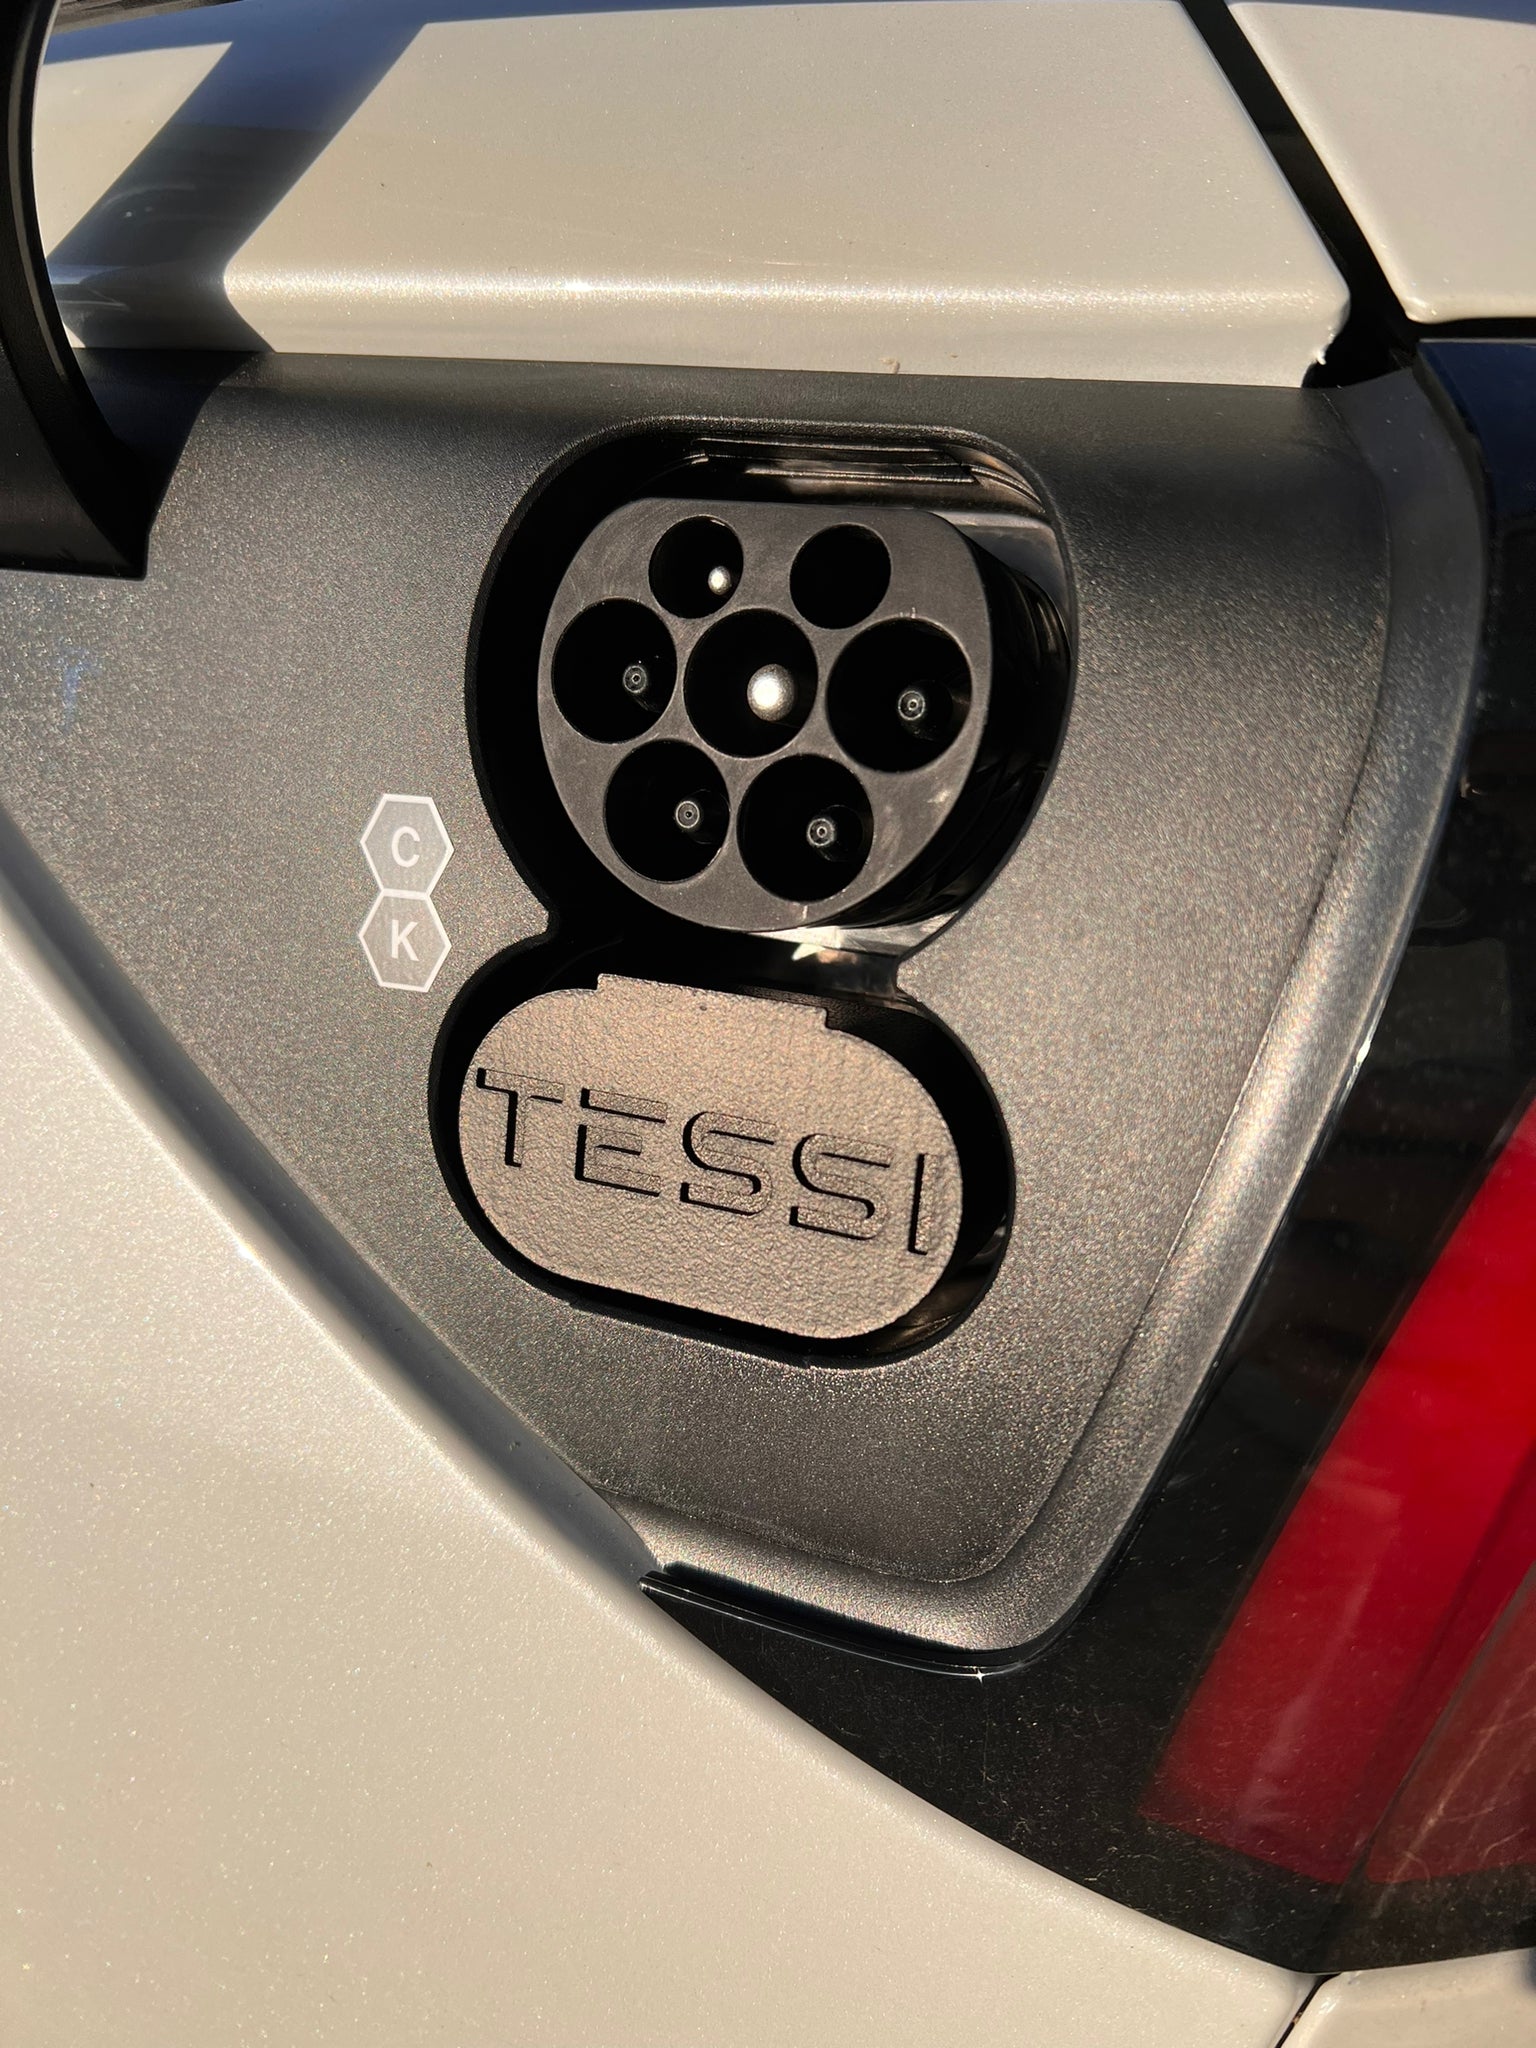 Capuchon de protection TESSI CCS (tous les modèles Tesla)